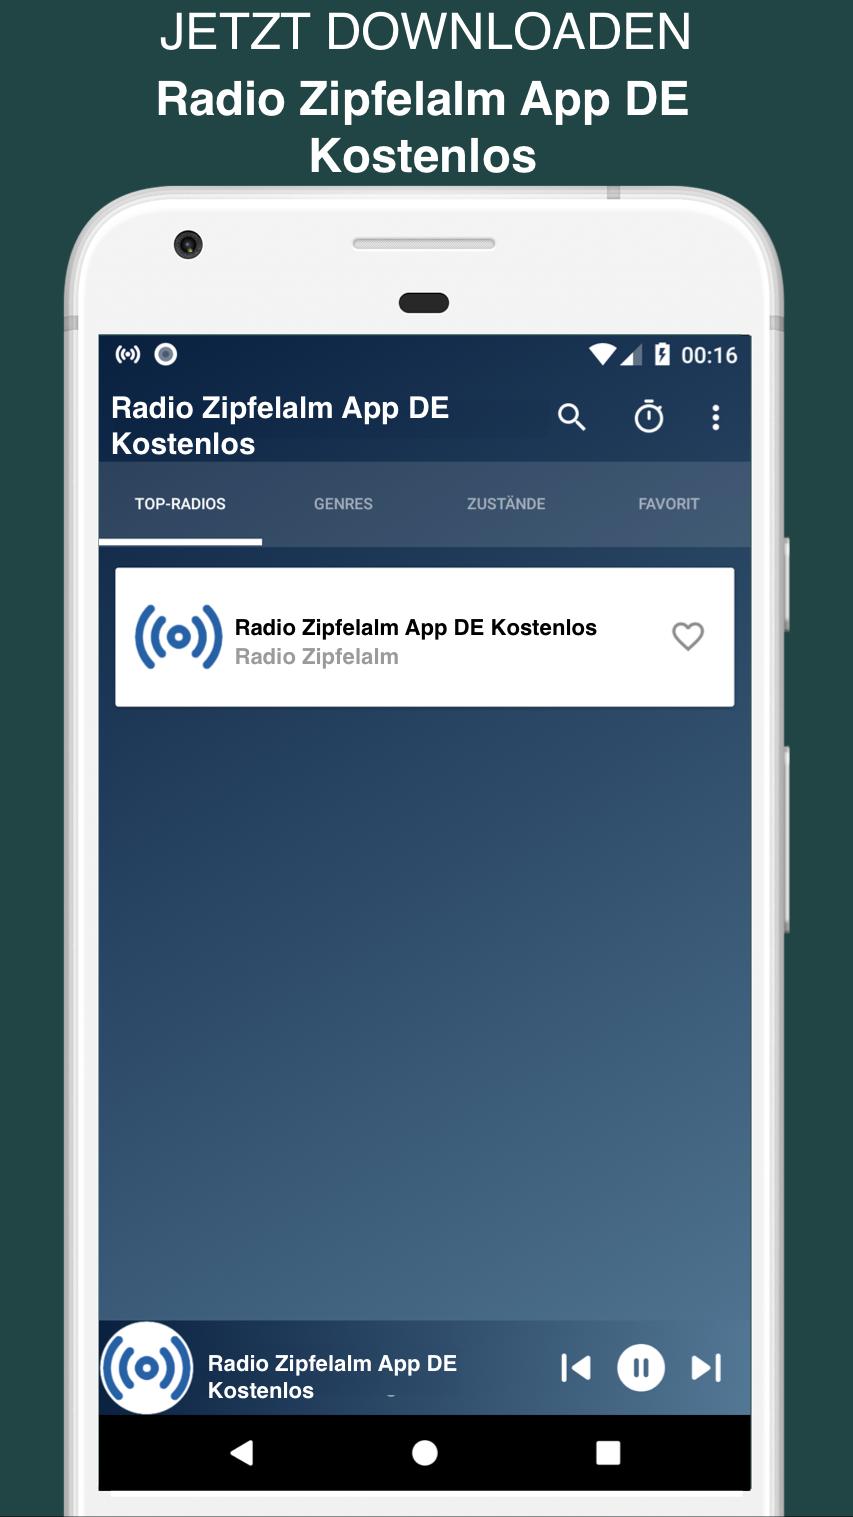 Radio Zipfelalm App DE Kostenlos for Android - APK Download